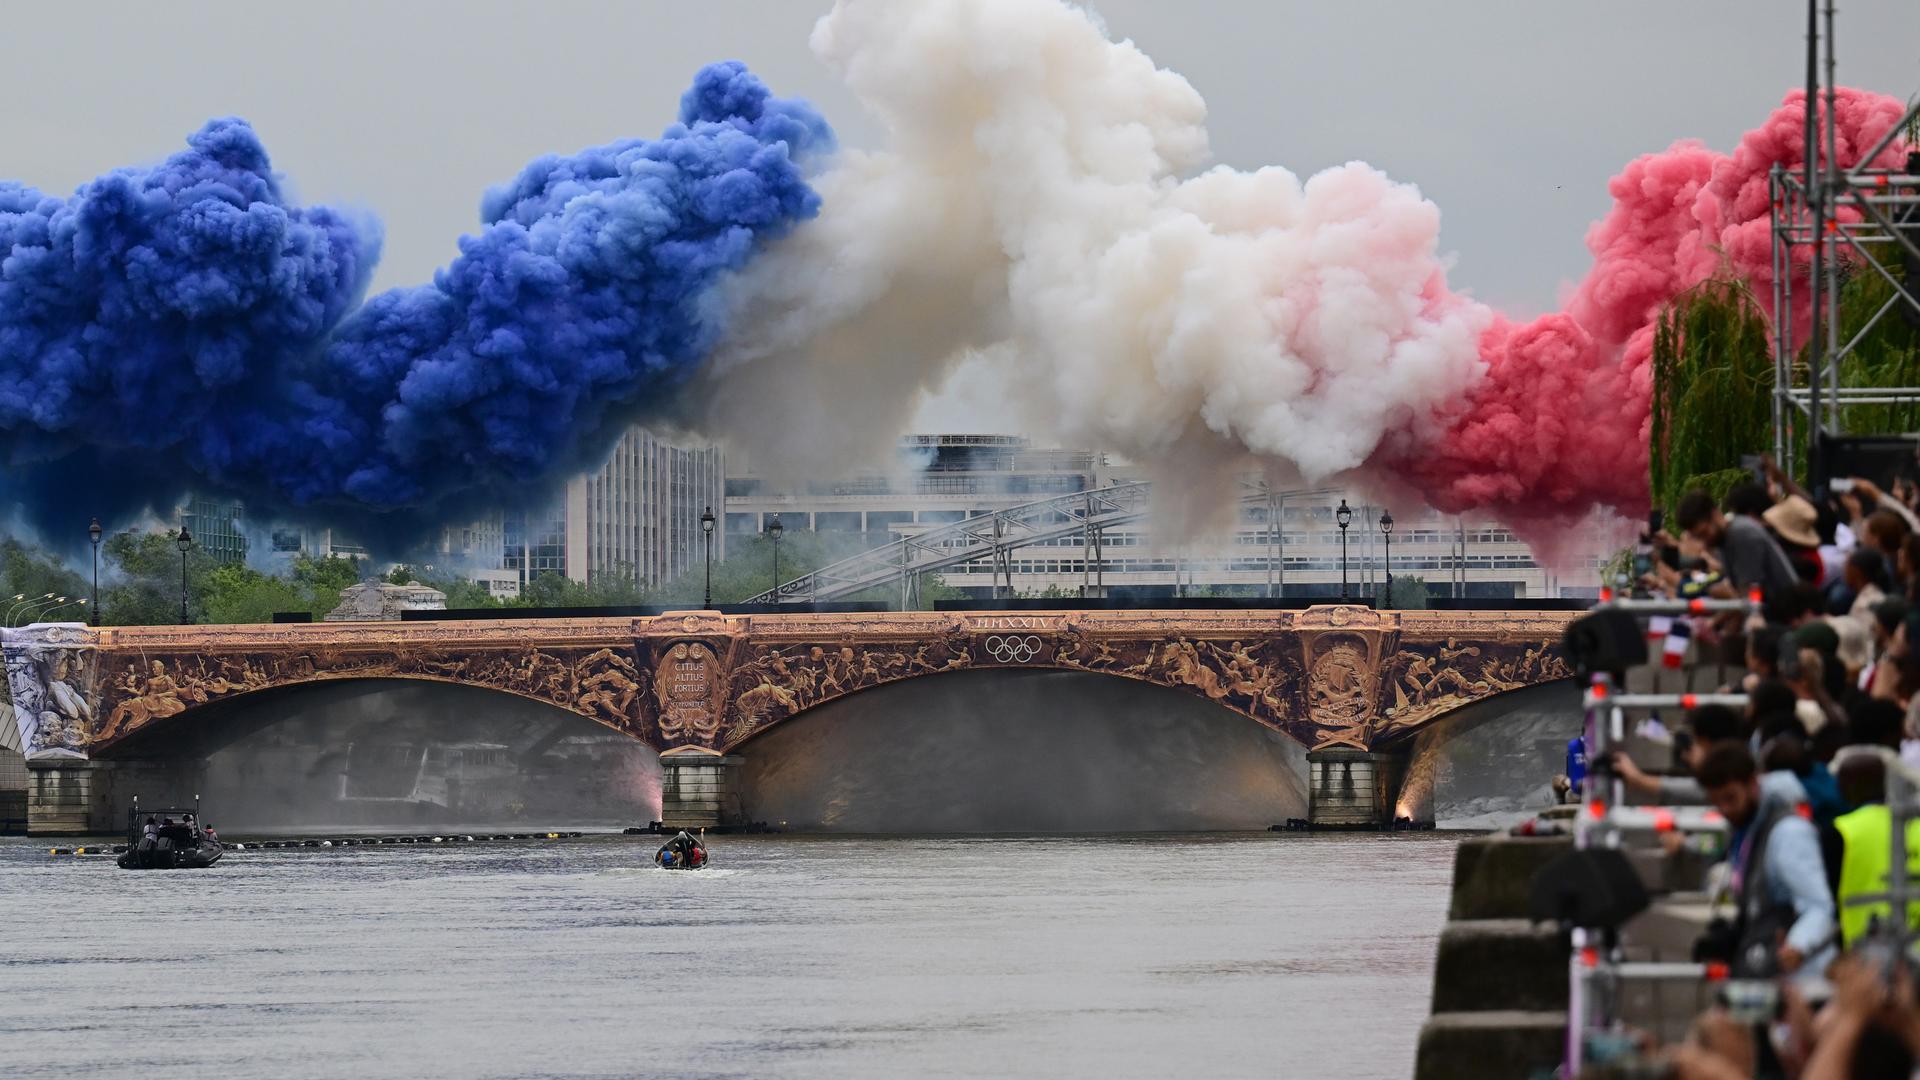 Pyrotechnik in den Farben der französischen Nationalflagge - blau, weiß, rot - wird über einer Brücke auf der Seine gezündet.